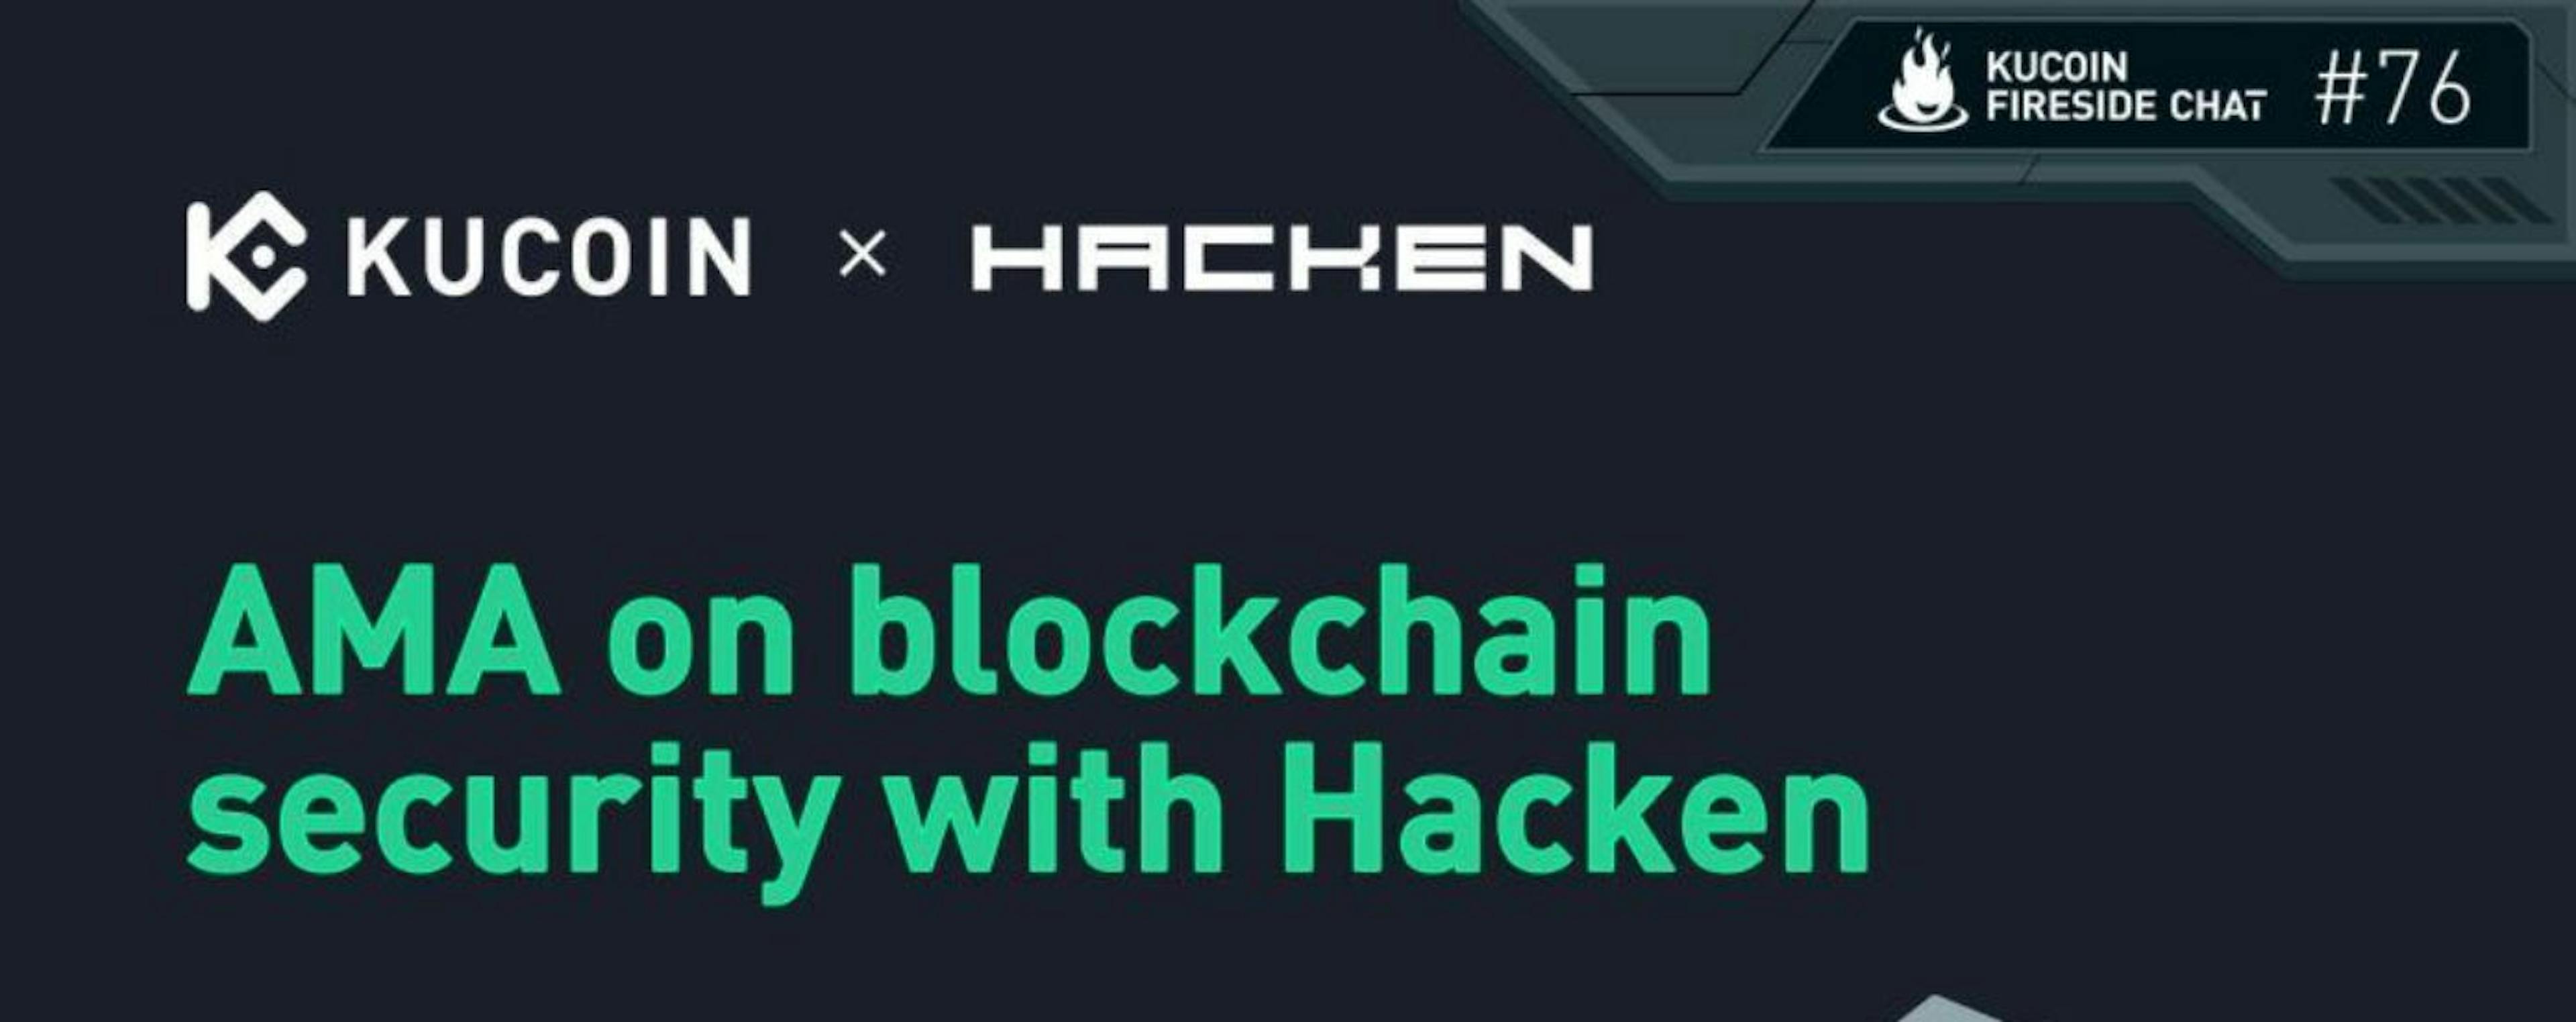 featured image - Sécurité pour Blockchain avec KuCoin et Hacken